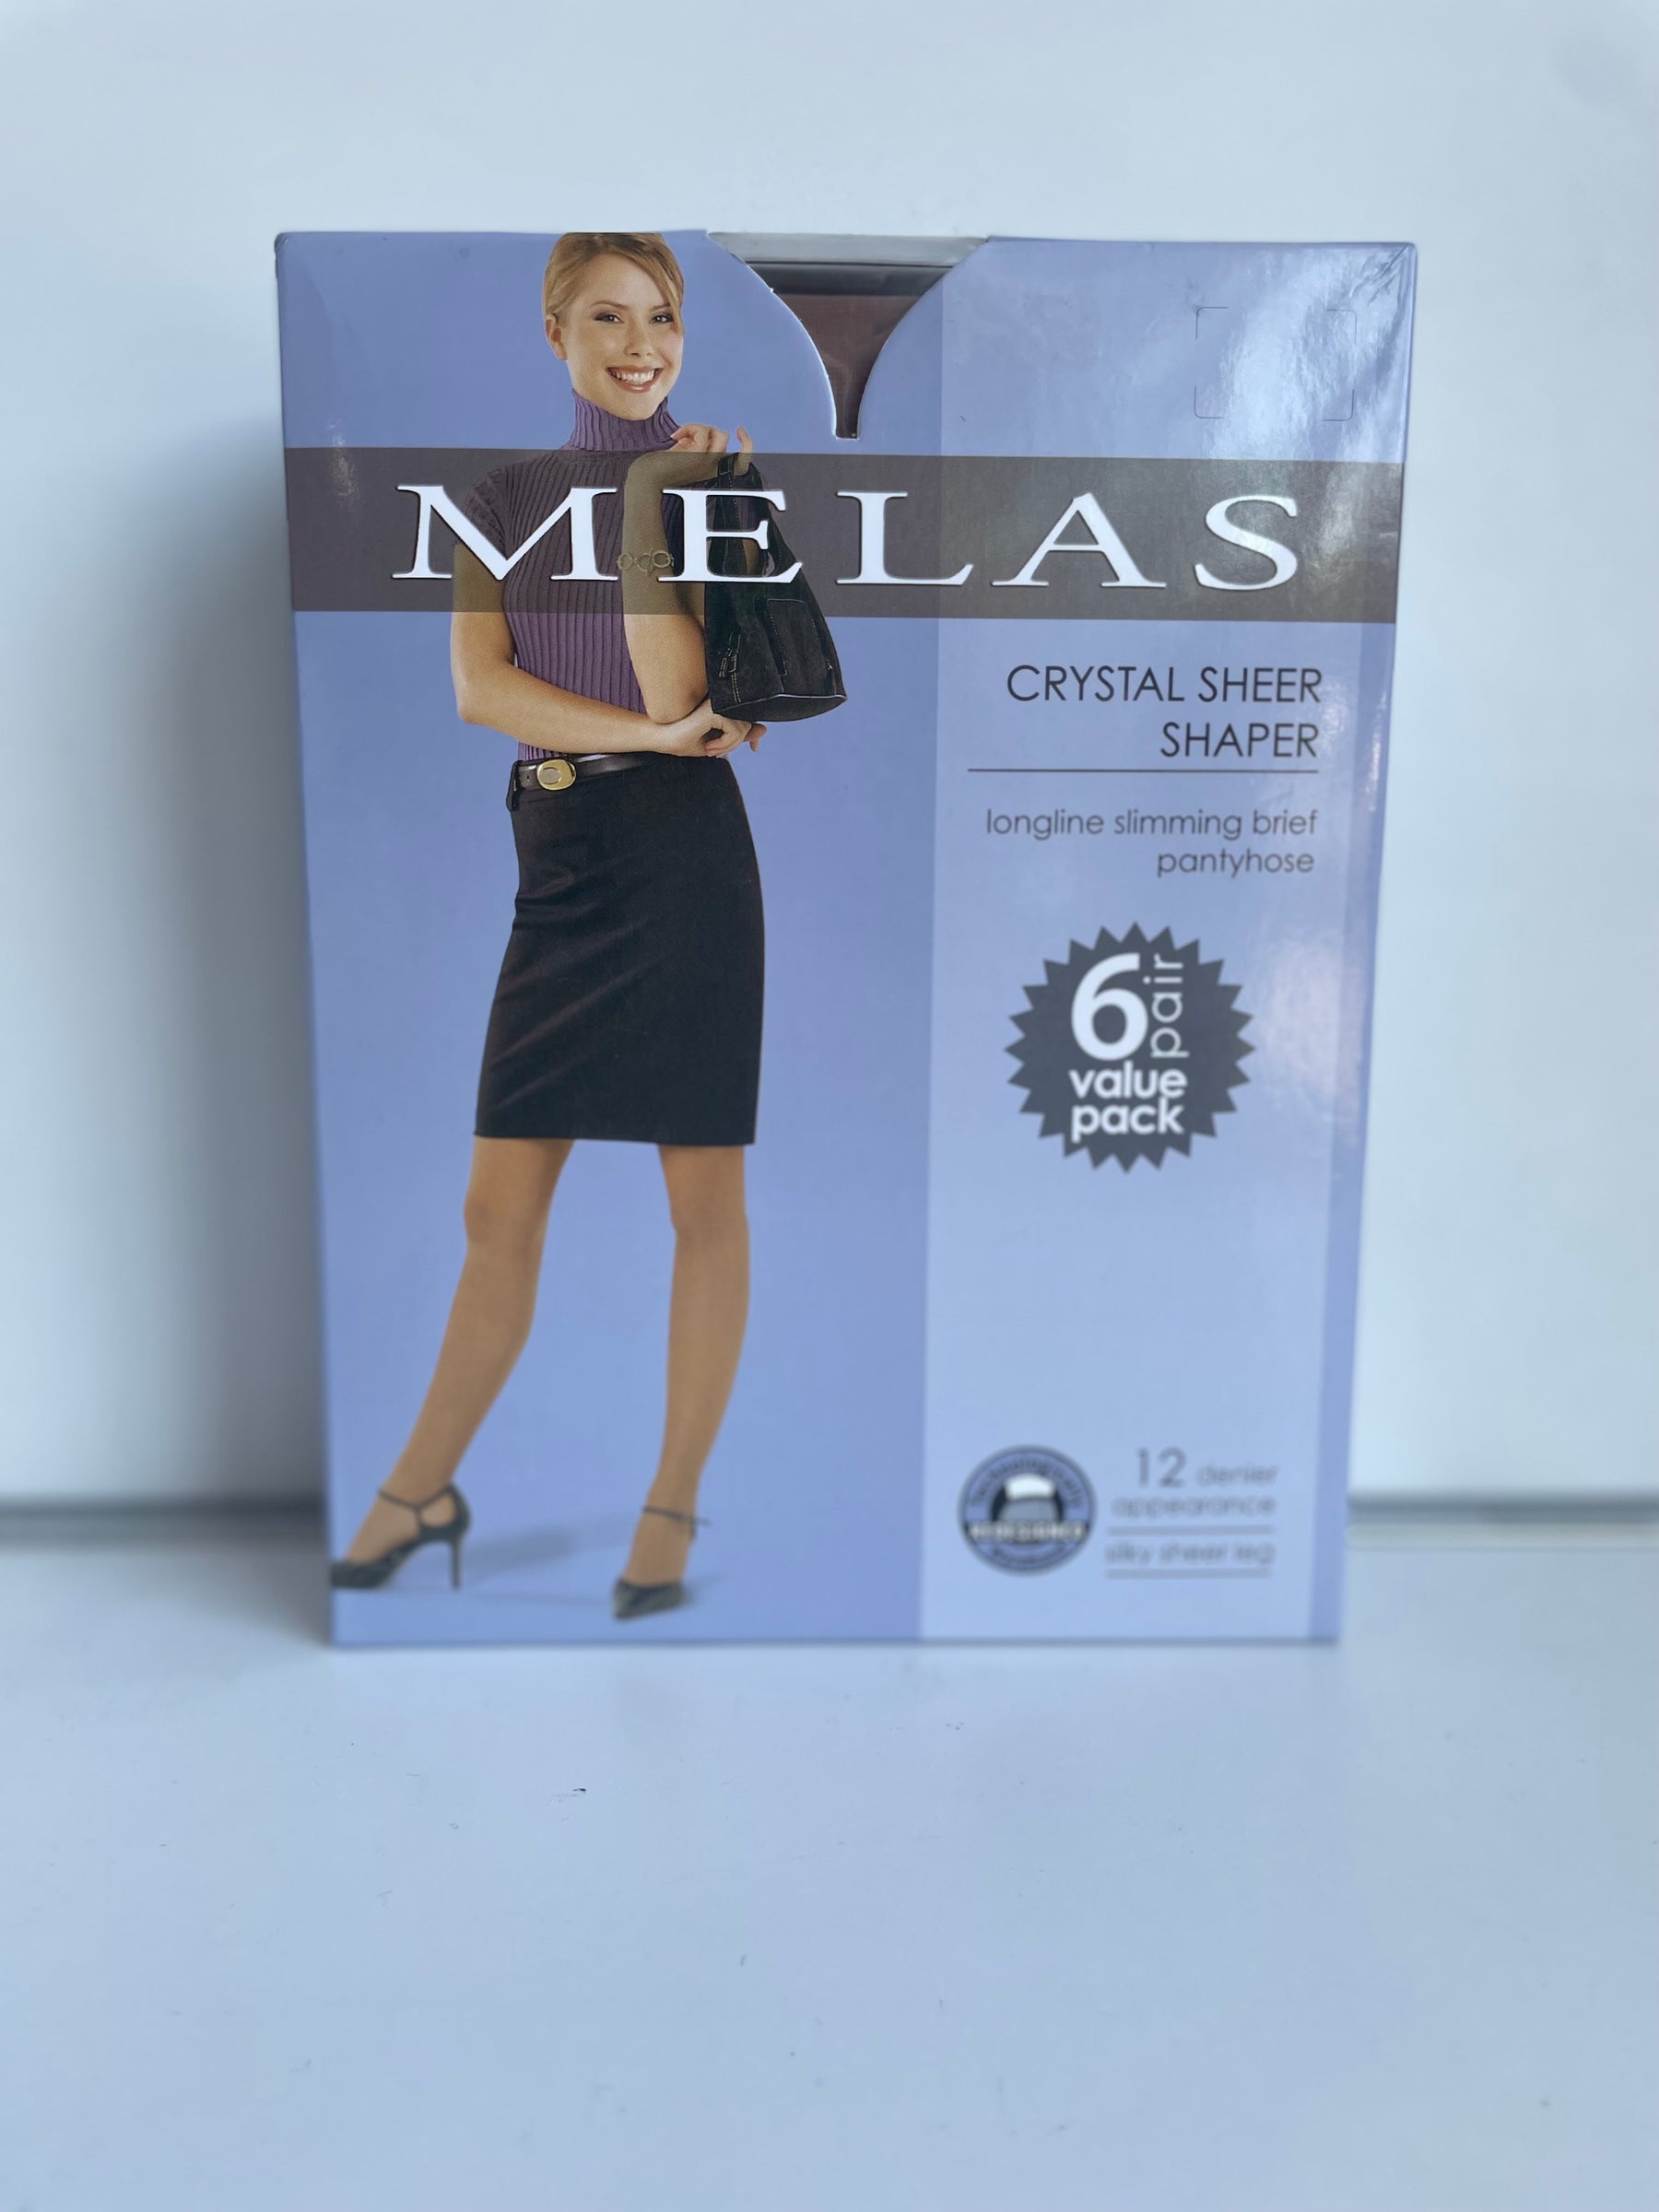 Melas Crystal Sheer Shaper 6 Pair Value Pack – Legaacy